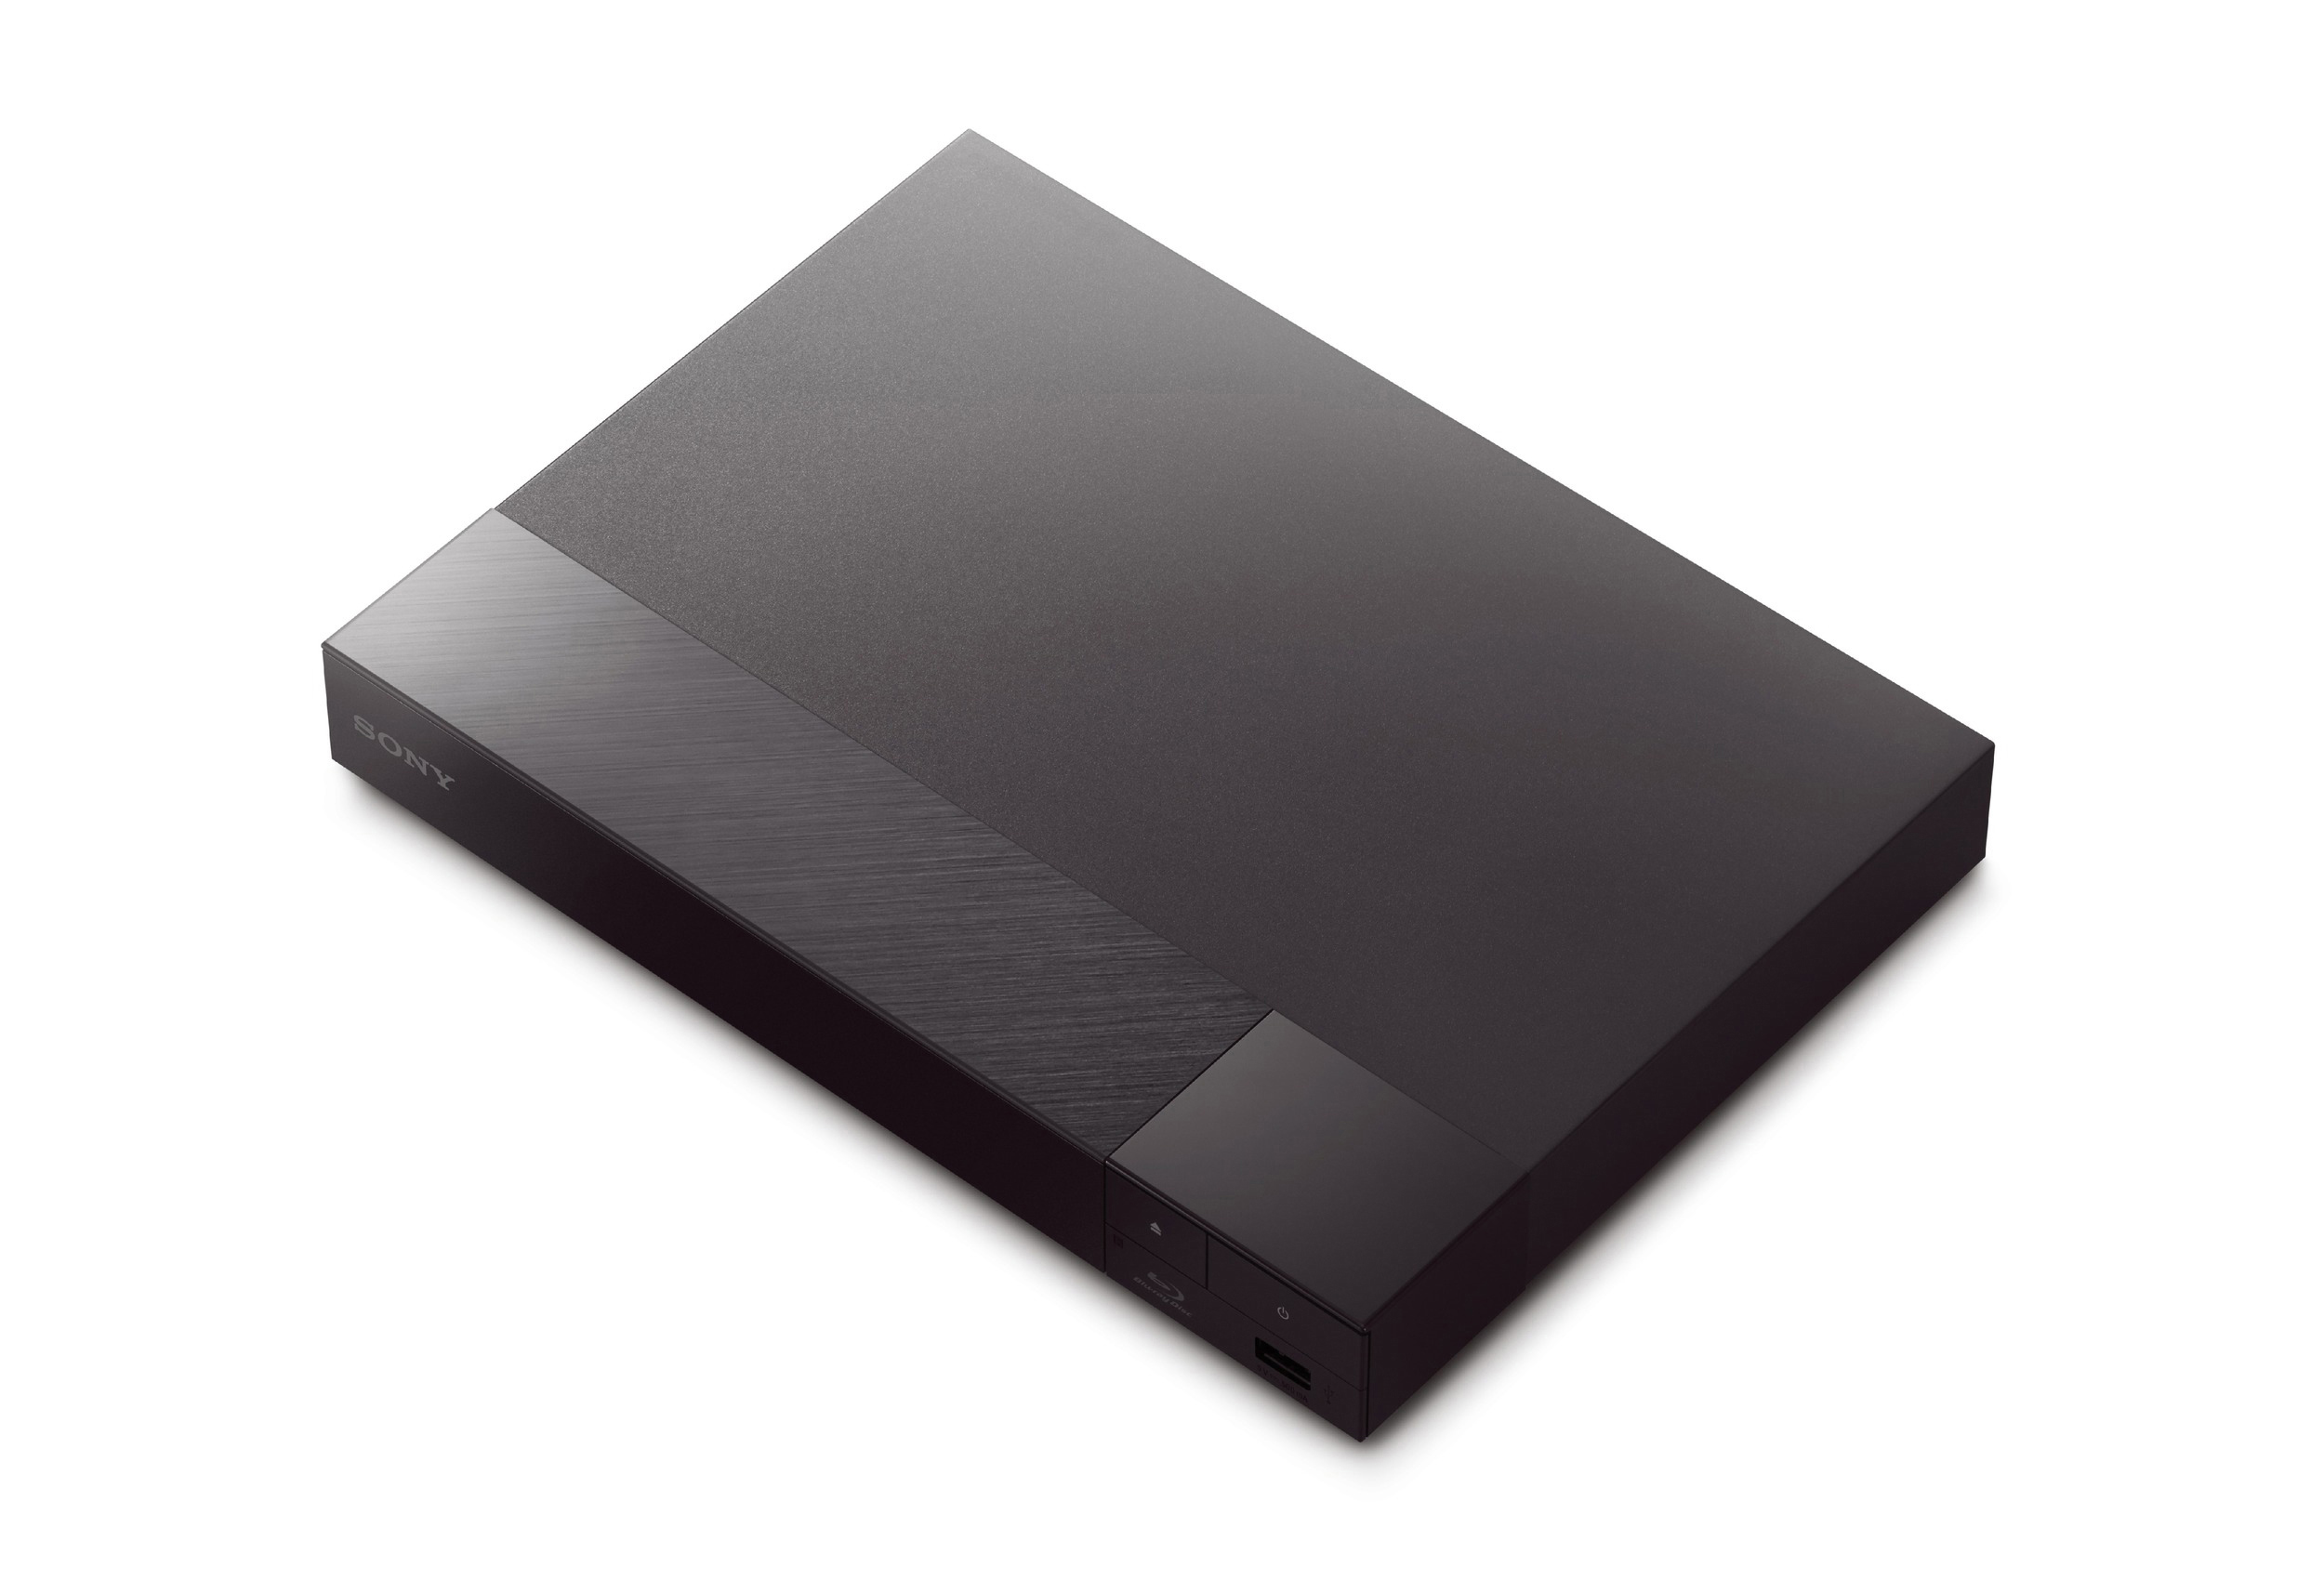 SONY BDP-S6700 Player Blu-ray Schwarz